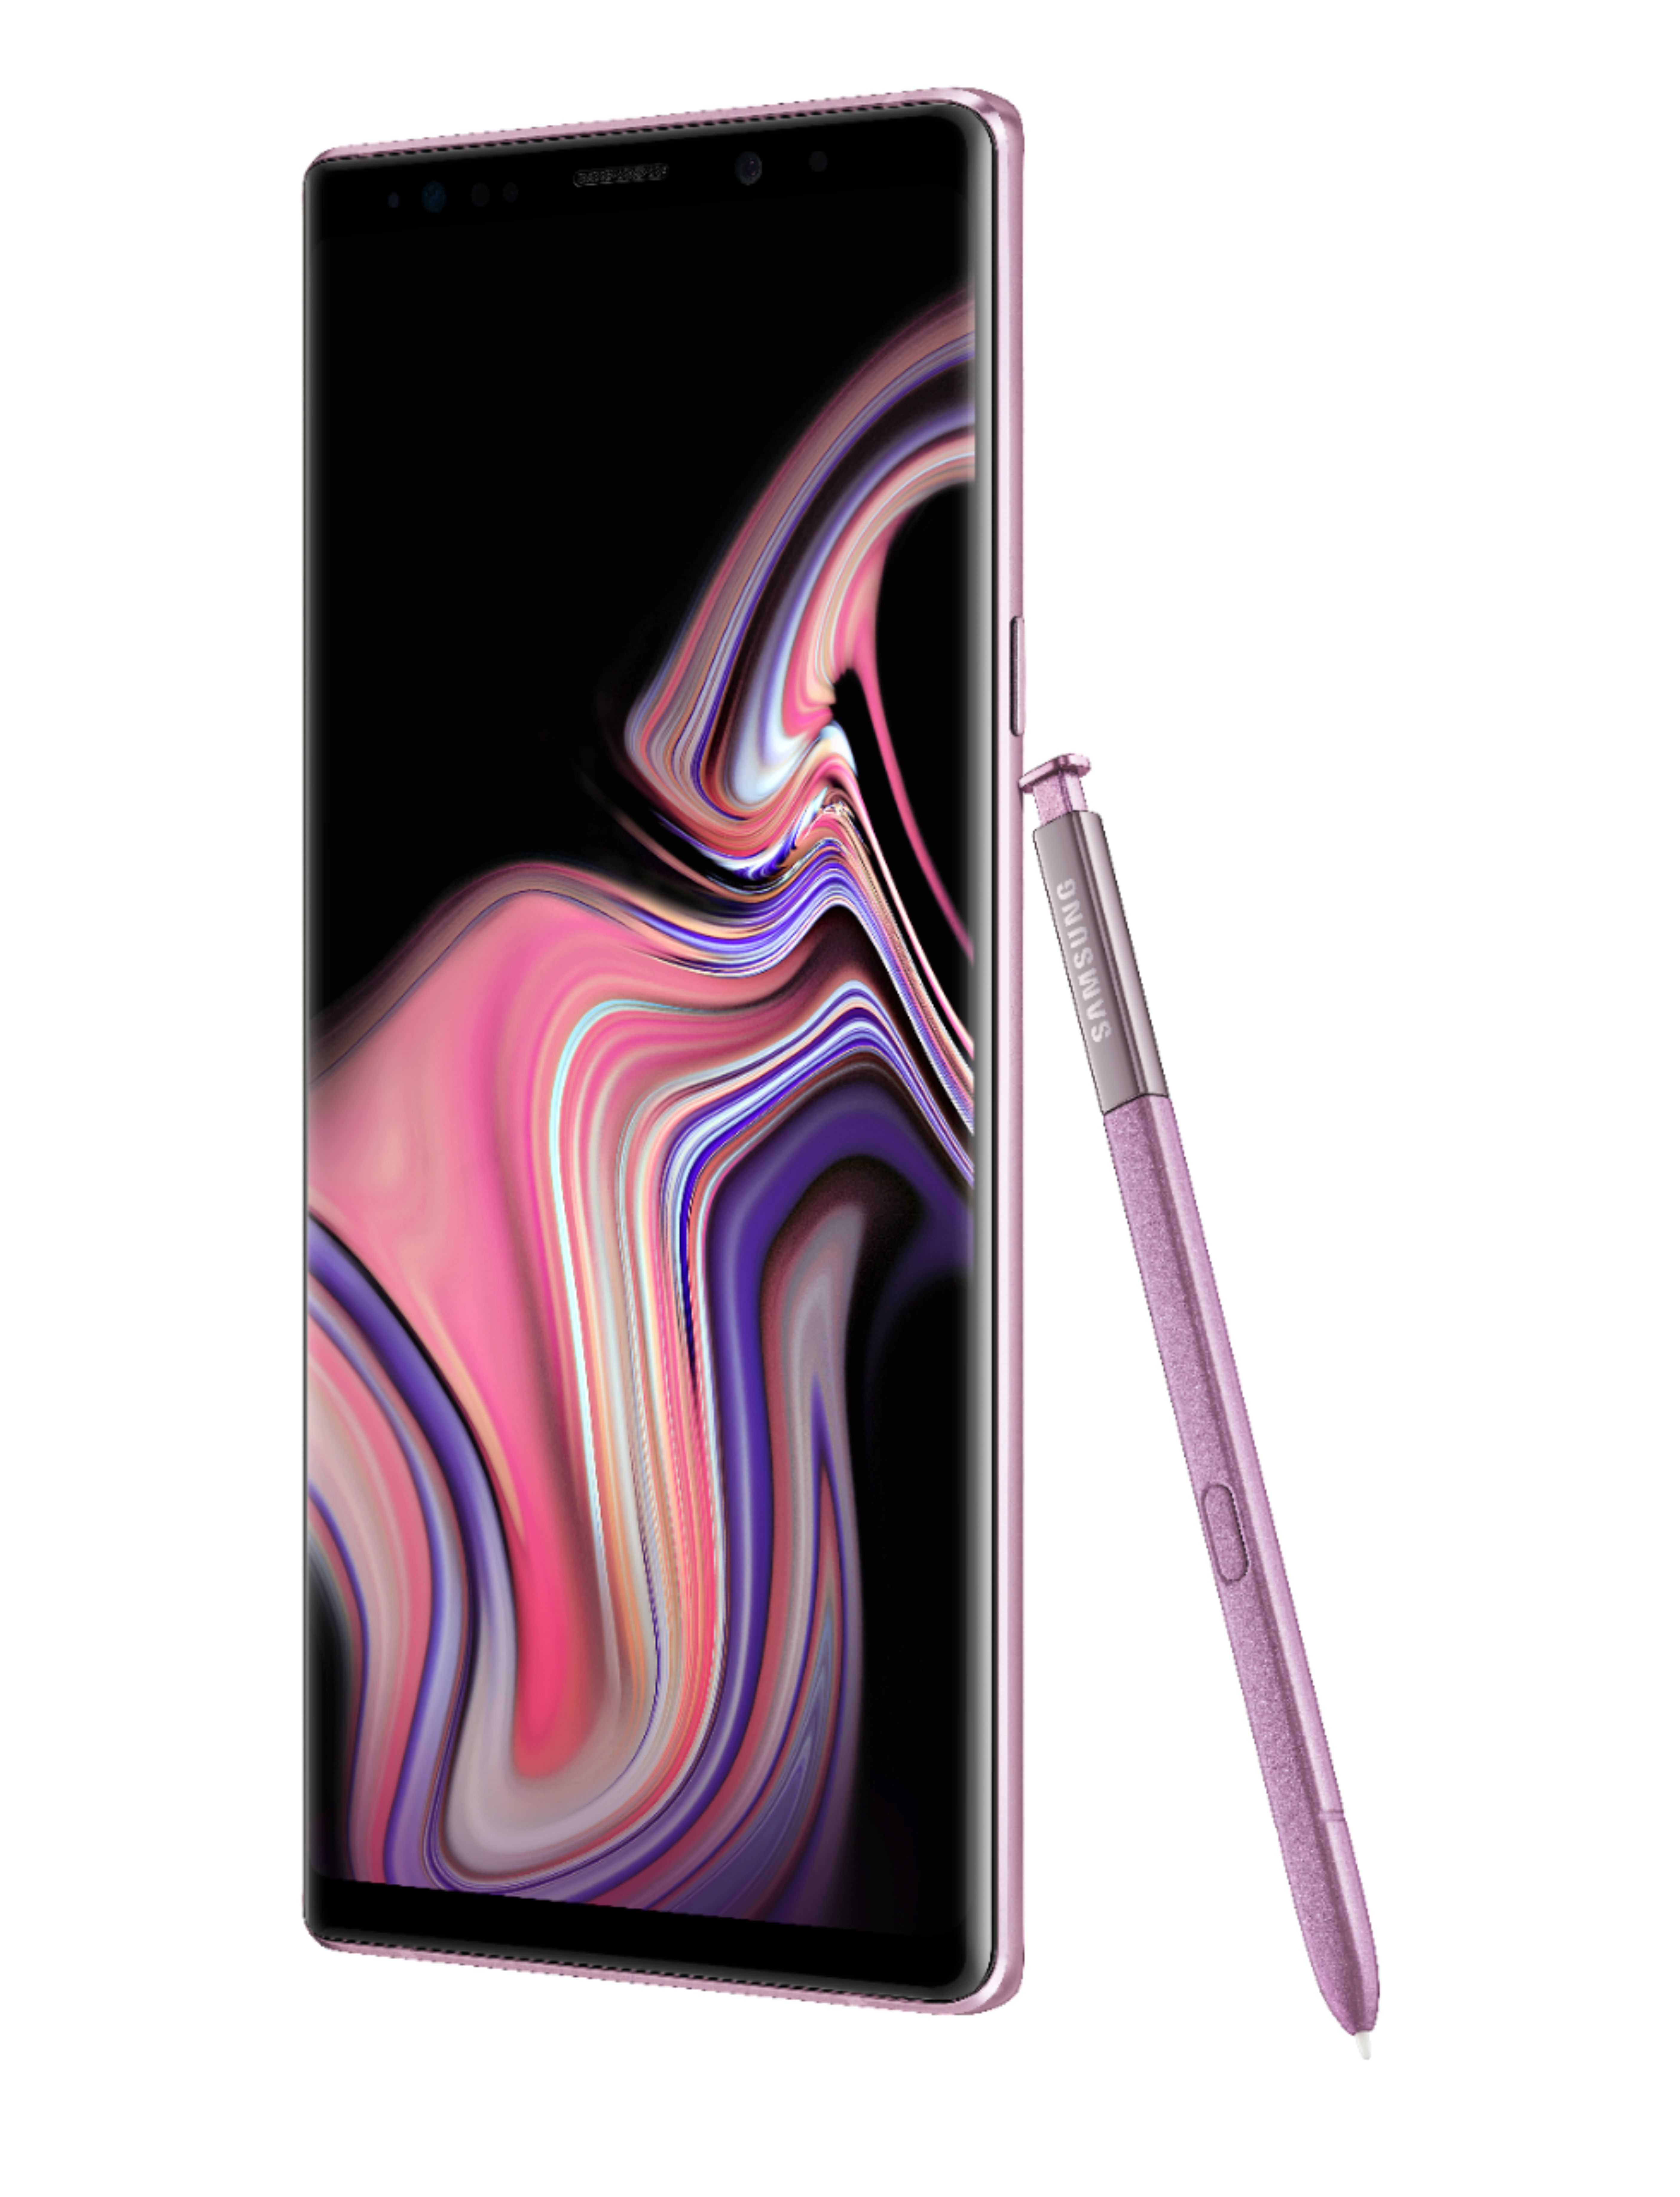 お見舞い Galaxy Note9 Lavender Purple 128 GB au sushitai.com.mx